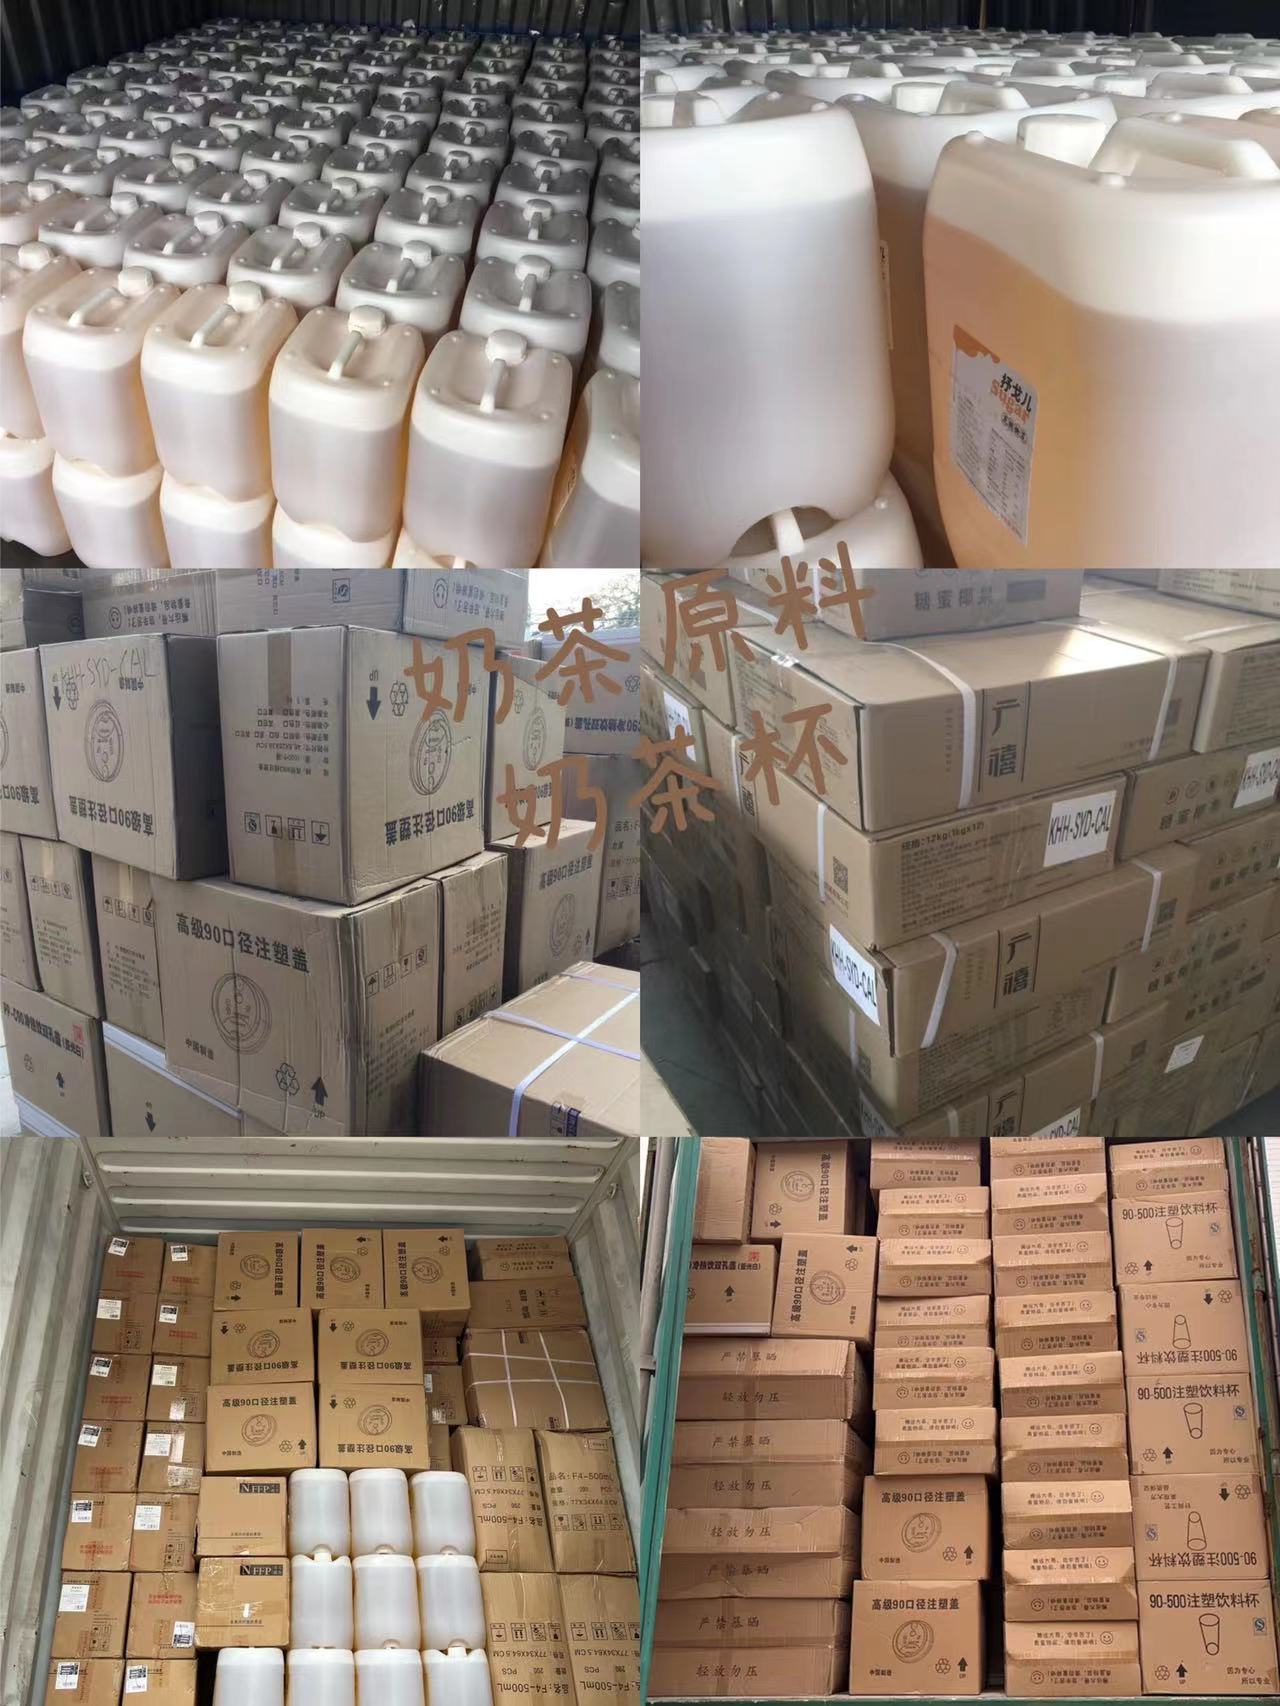 大批量奶茶杯奶茶原料海运到澳洲布里斯班的操作流程分享